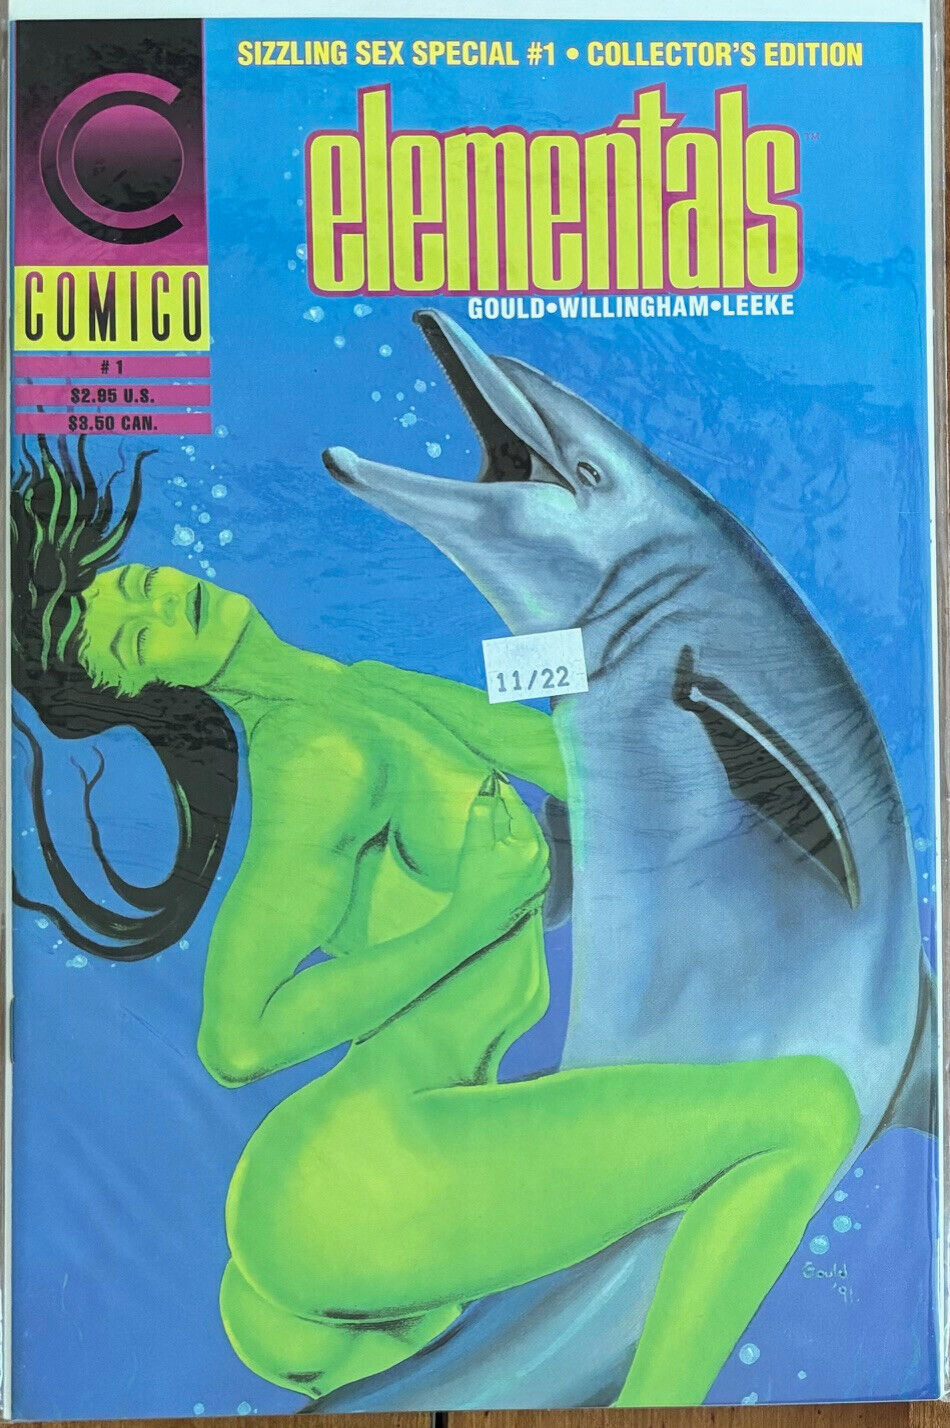 ELEMENTALS, COMICO COMICS, 1991, #1 COLLECTORS EDITION,  QTY: 1,  VERY GOOD